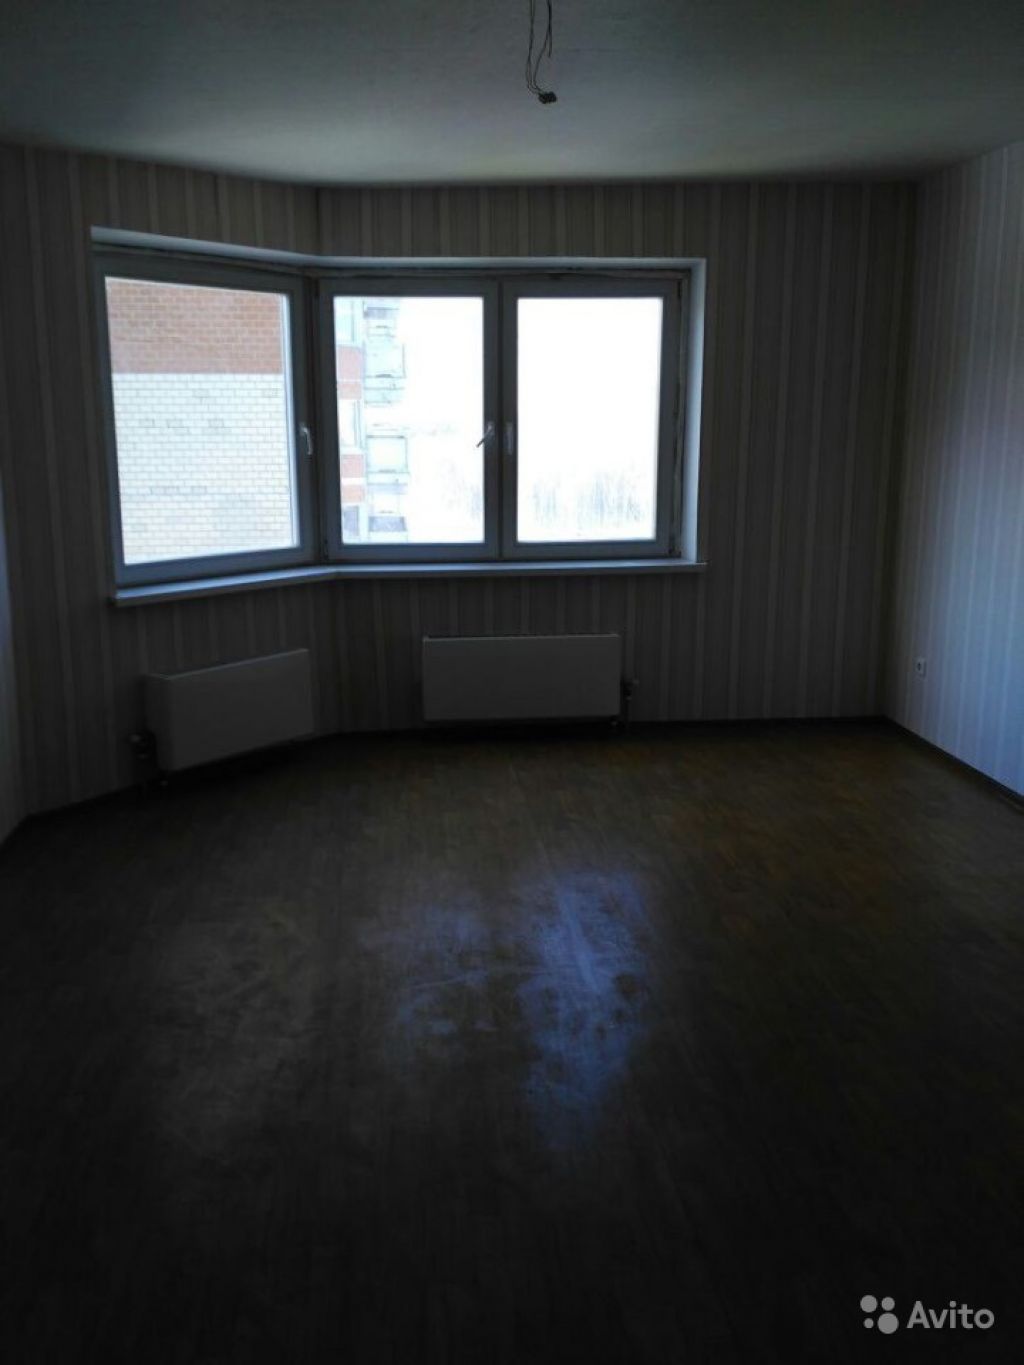 Продам квартиру 1-к квартира 36 м² на 6 этаже 19-этажного панельного дома в Москве. Фото 1